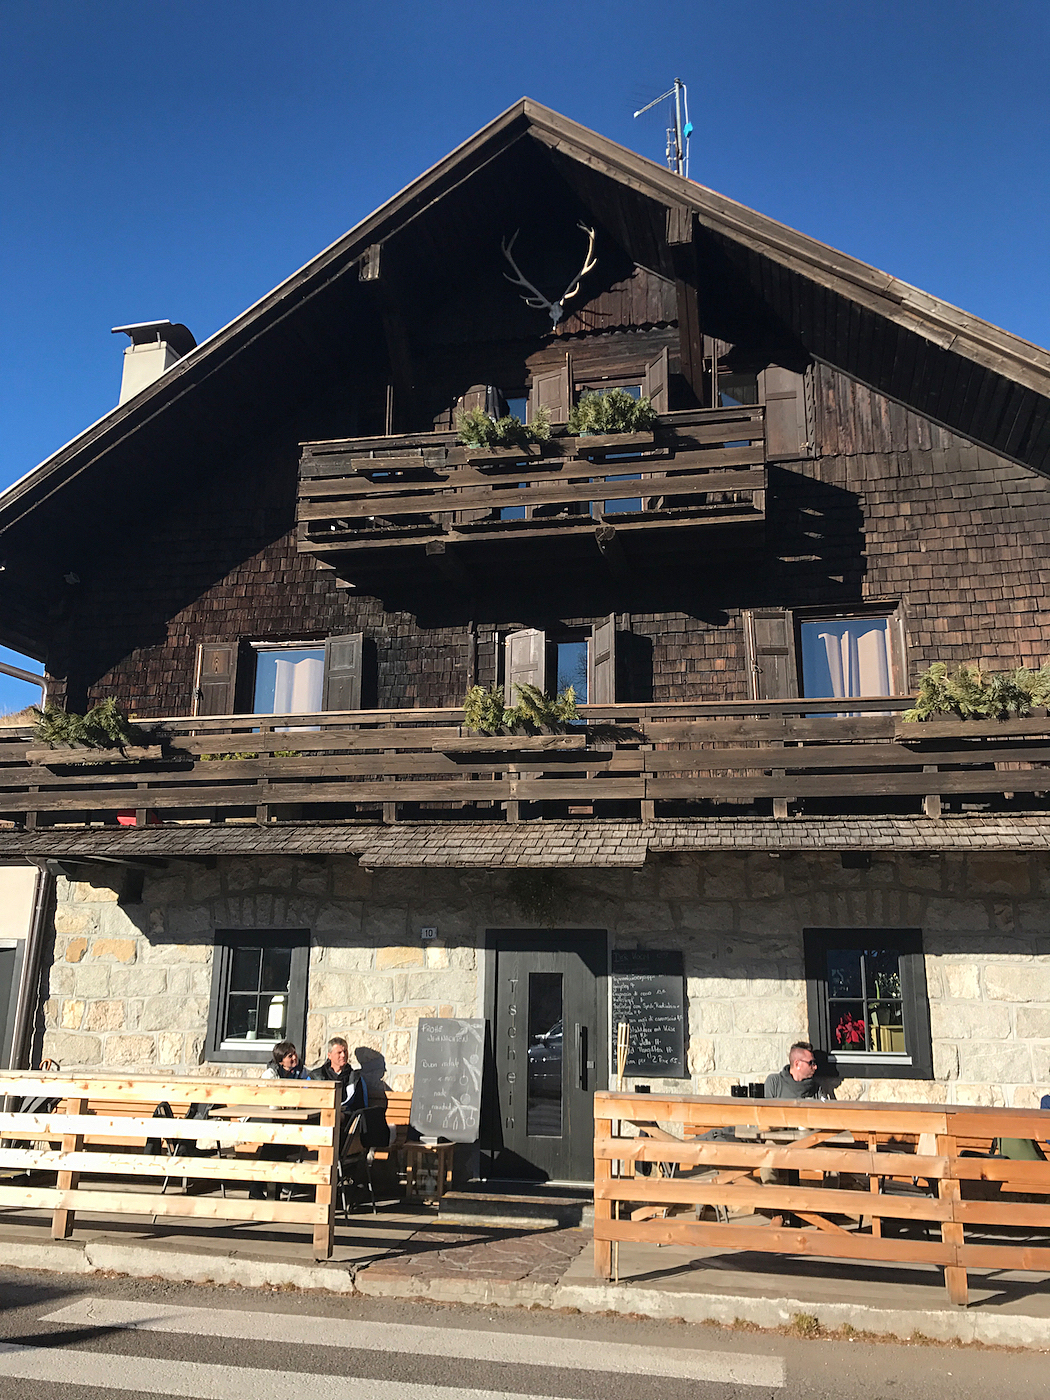 skiwoche südtirol _ Tscheiner Hütte Karerpass, winterholidays south tyrol - winterferien südtirol,